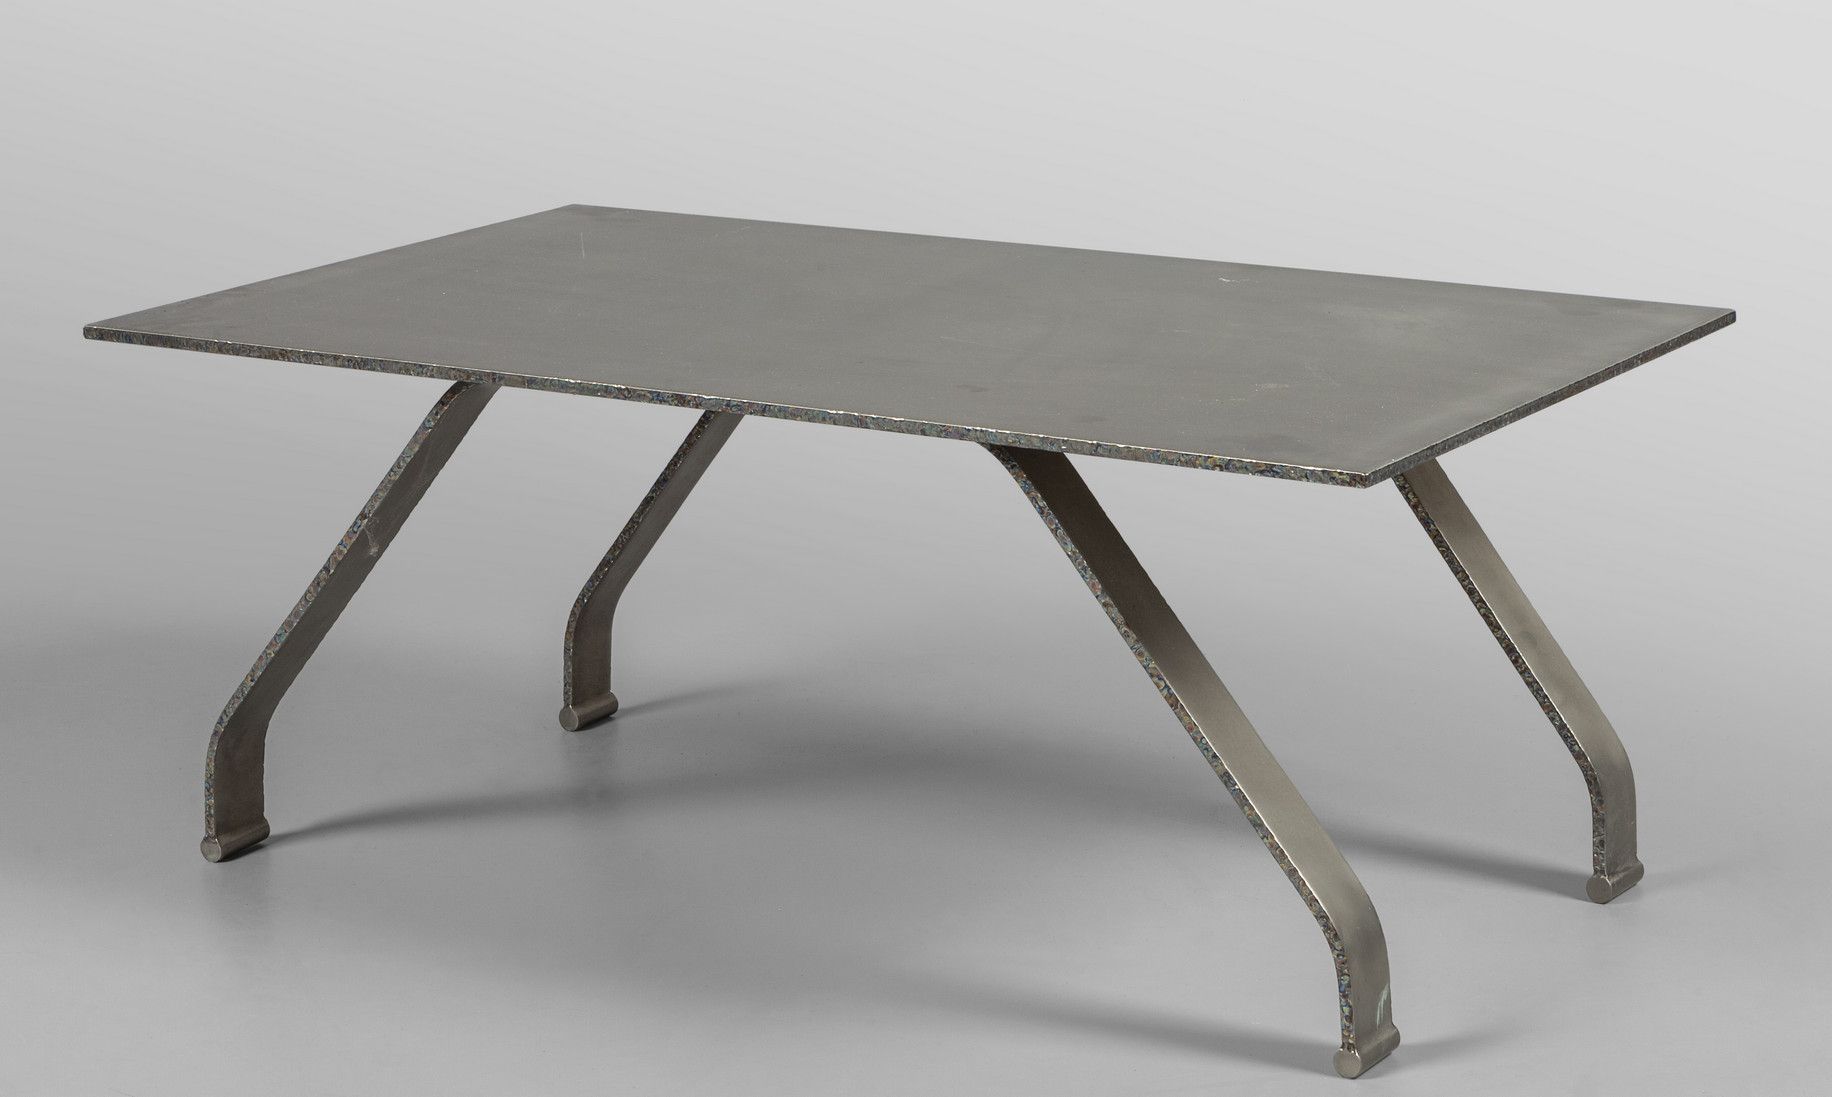 Tavolino da divano in titanio Couchtisch aus Titan 
cm. 100x57 h. 40, Kg.34 ca.